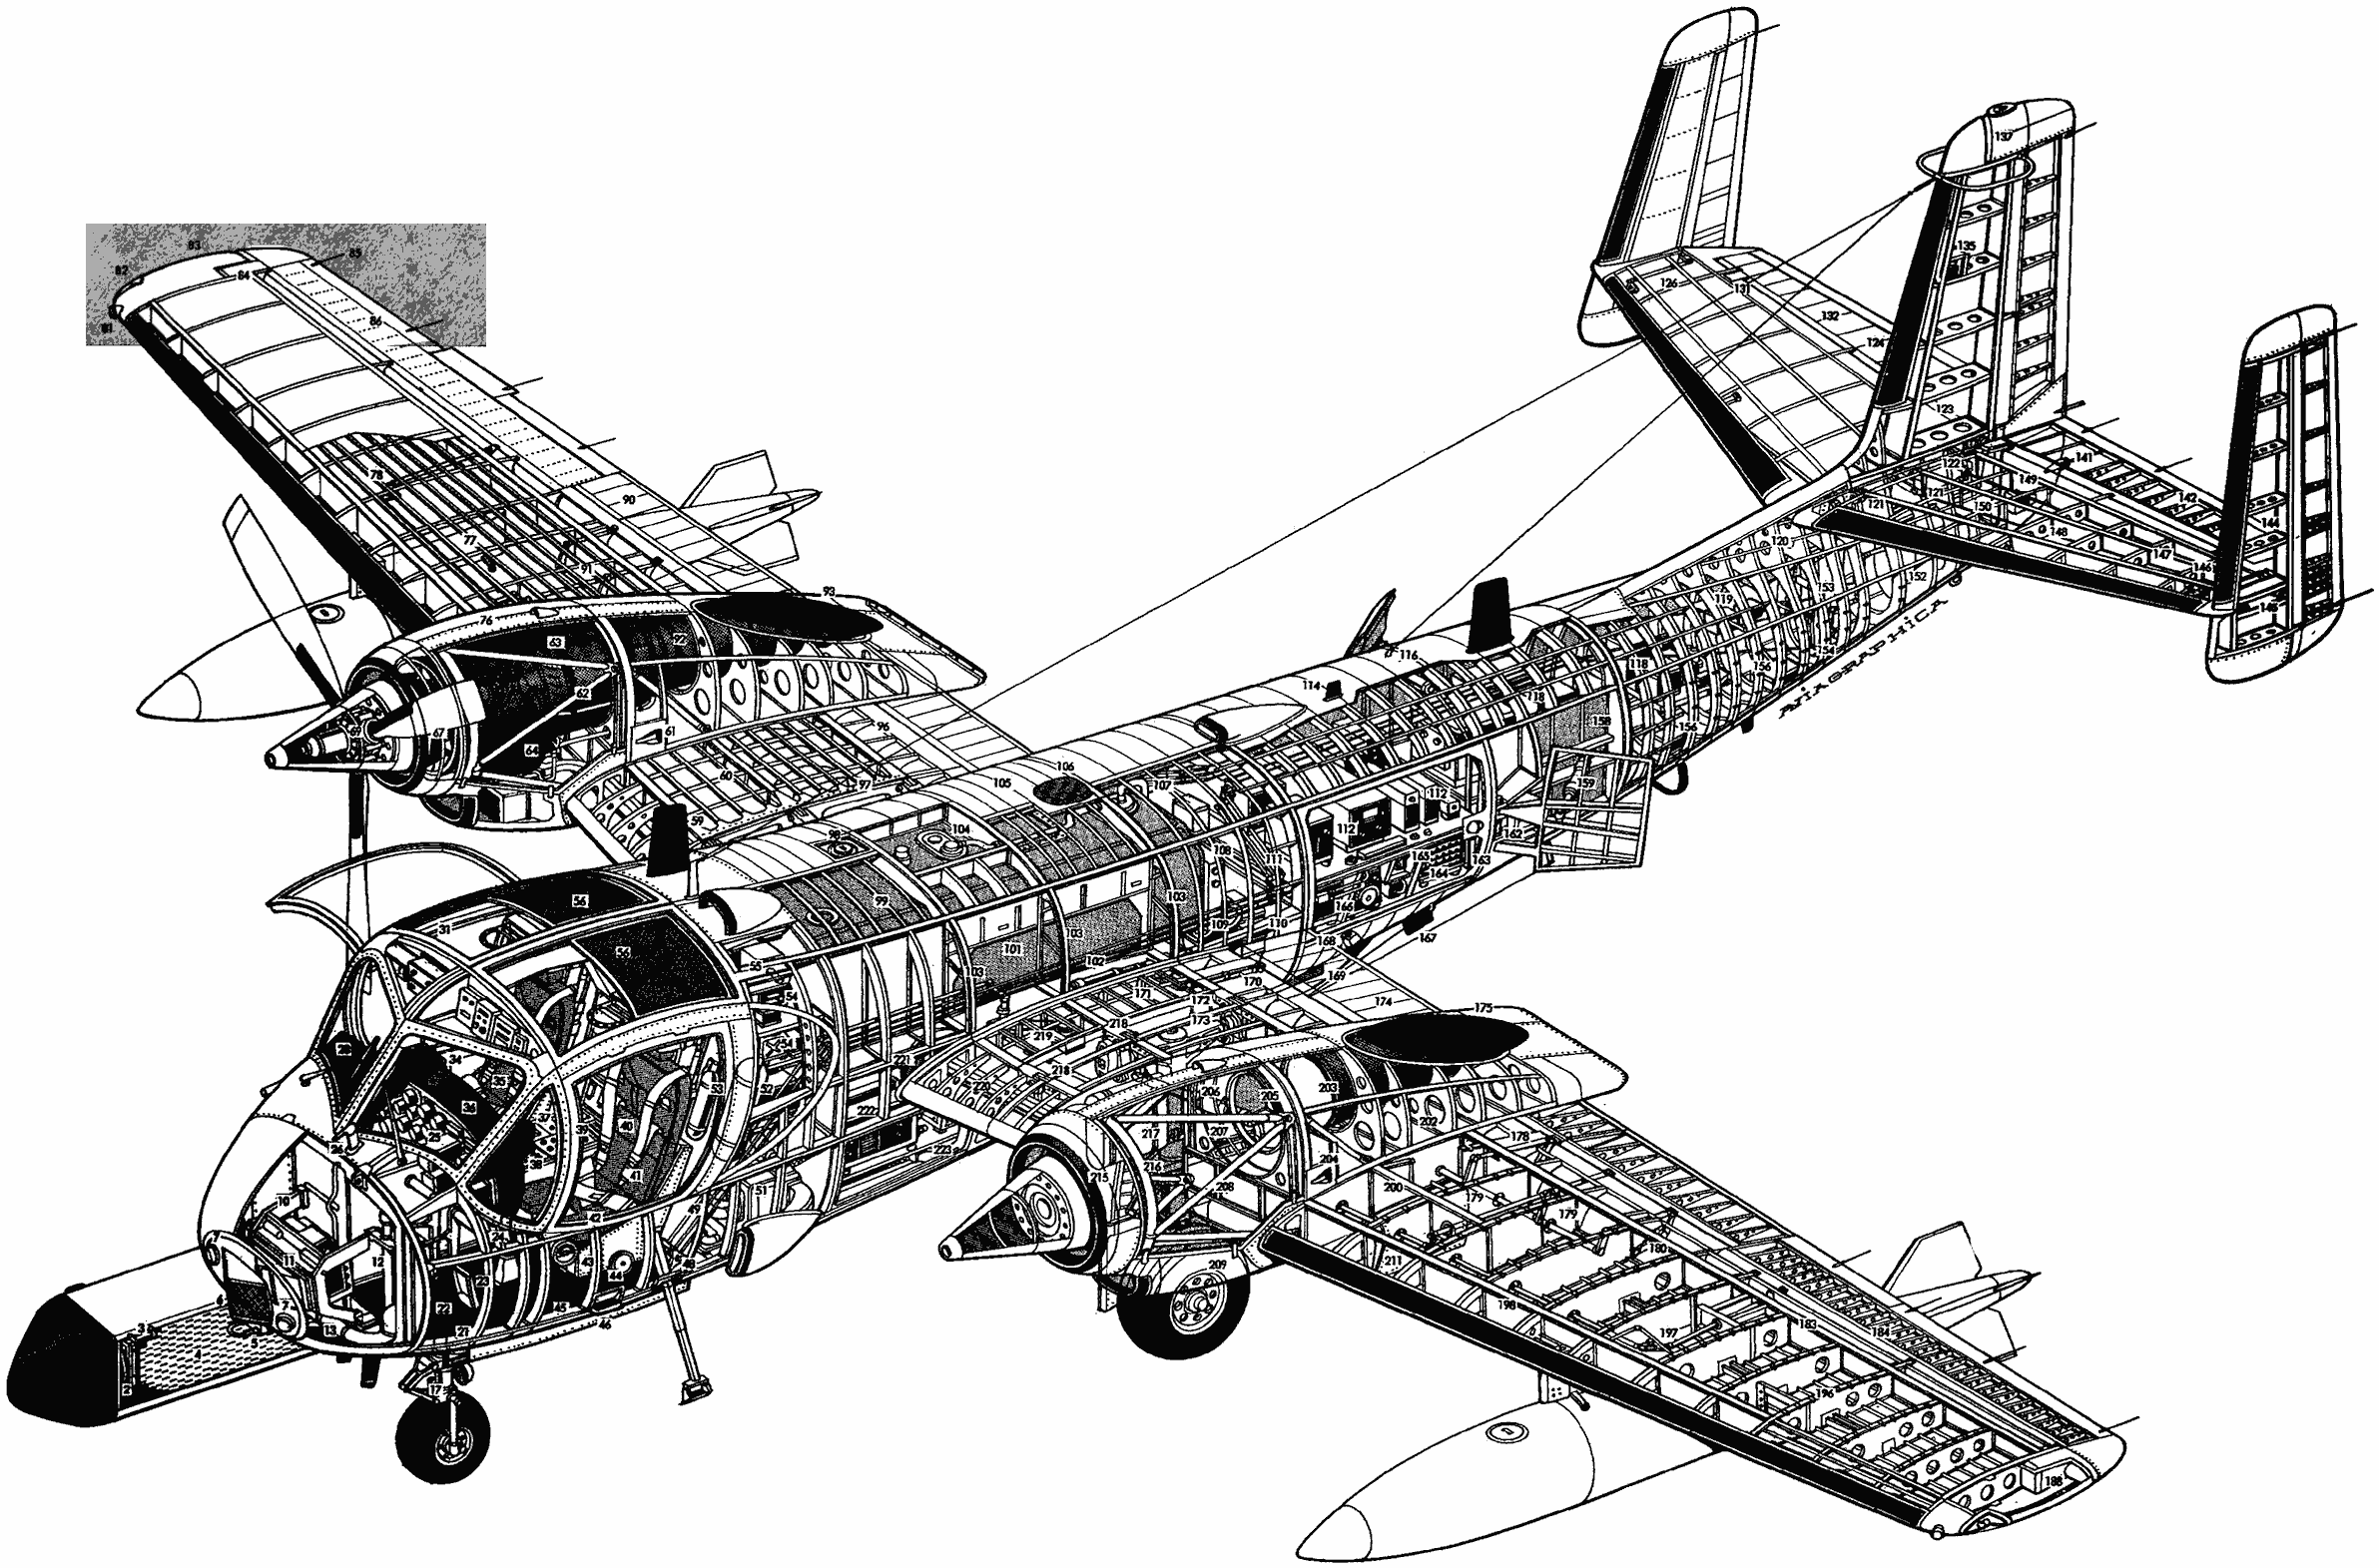 Grumman OV-1 Mohawk cutaway